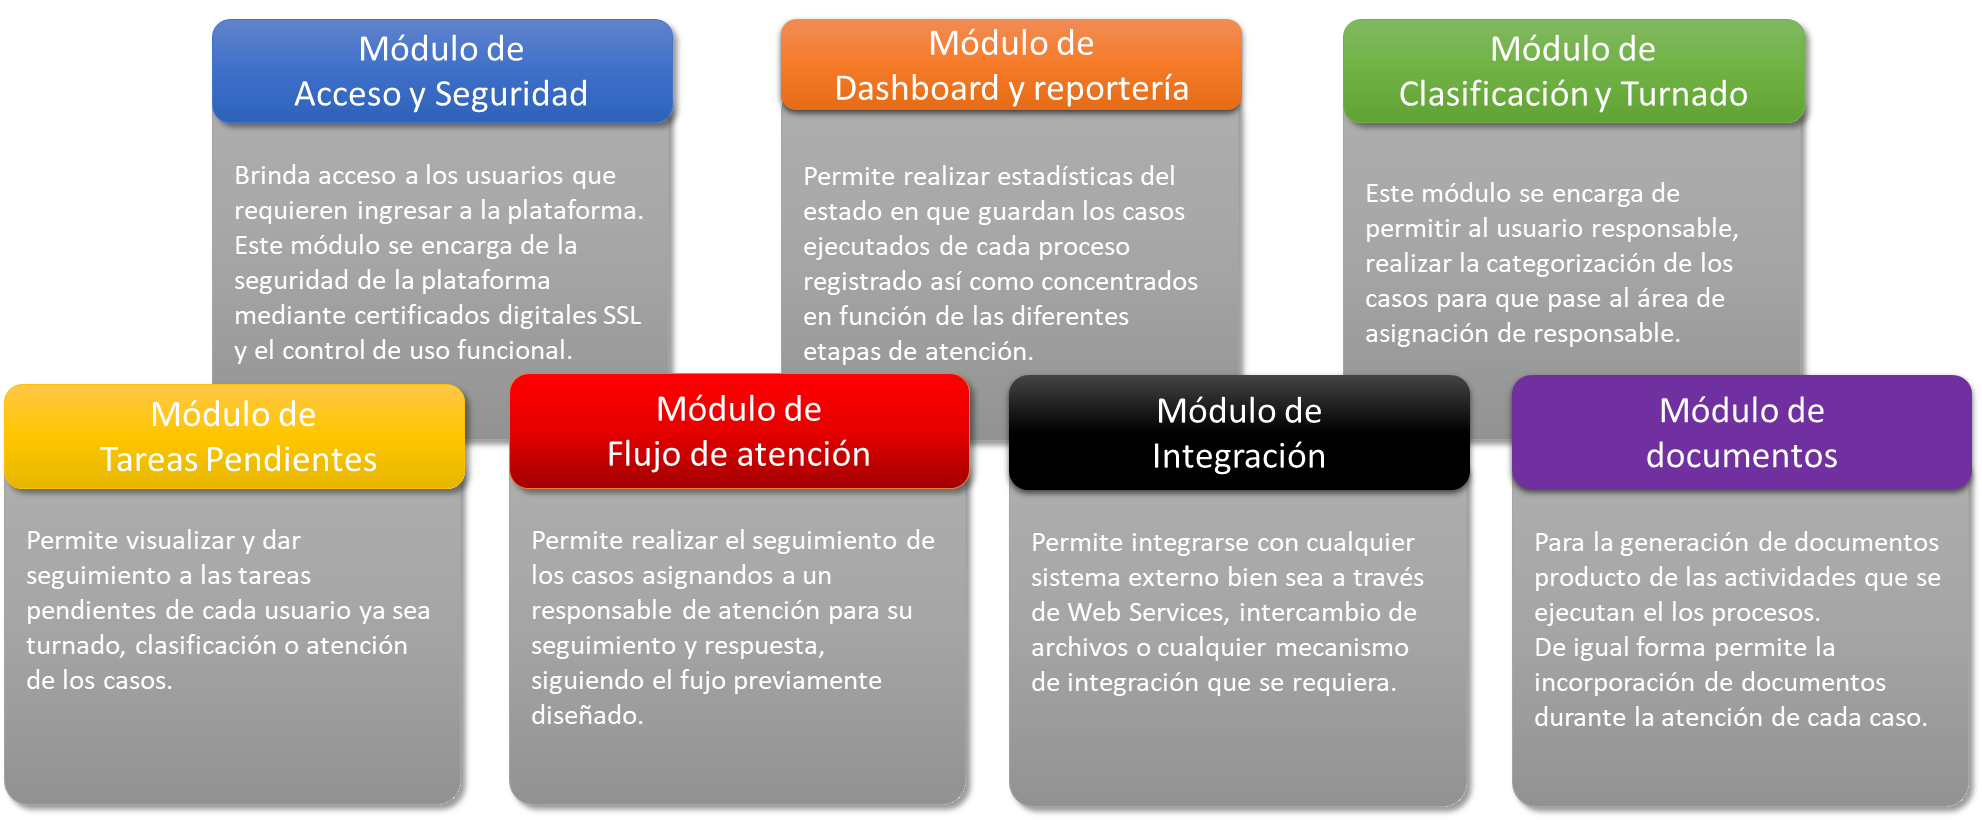 Gestión Digital de Servicios - aNuSoft - BPMS - Modulos